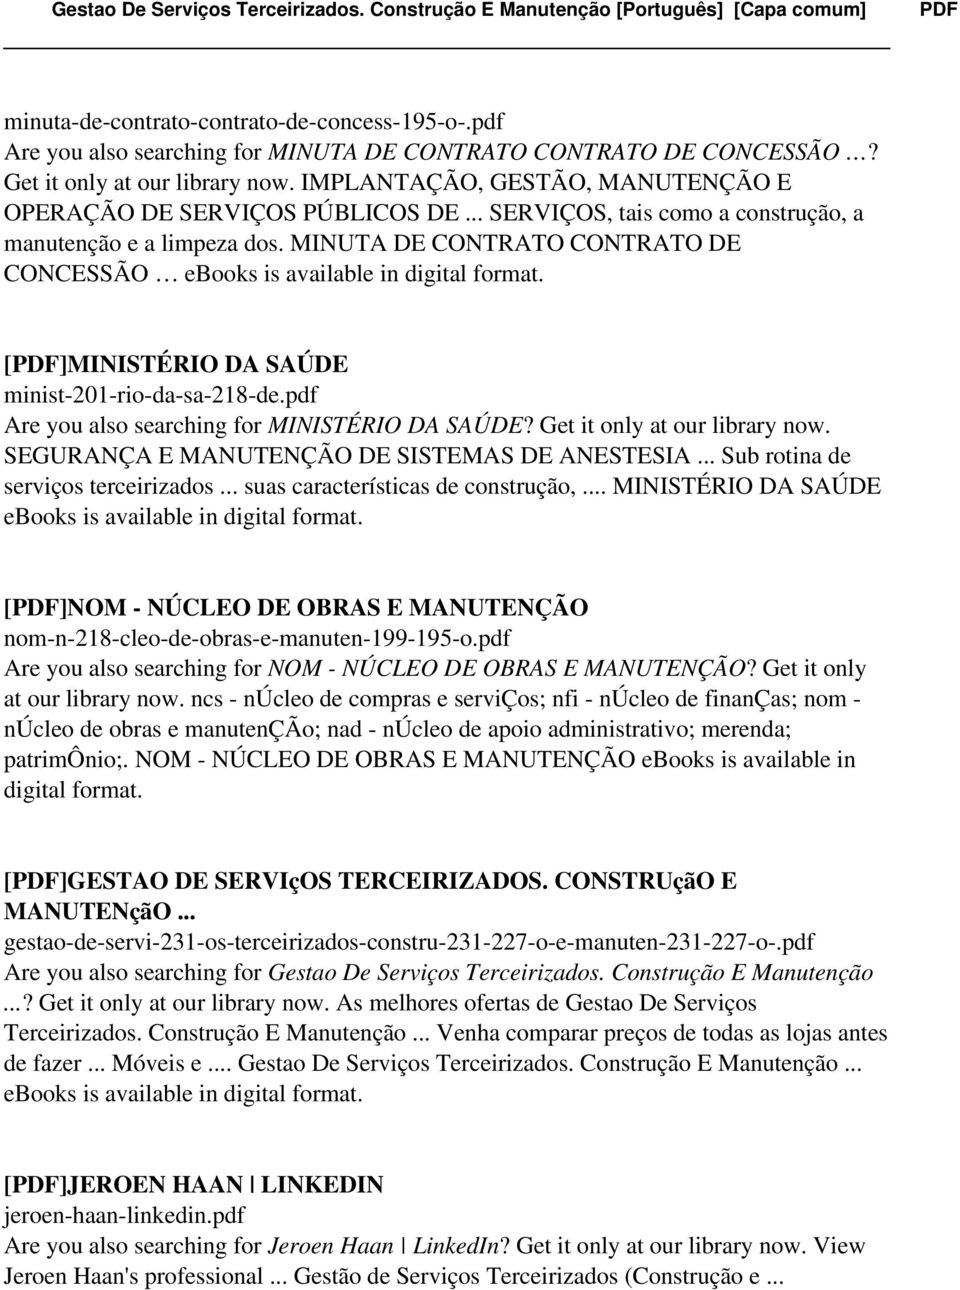 MINUTA DE CONTRATO CONTRATO DE CONCESSÃO ebooks is available in digital format. [PDF]MINISTÉRIO DA SAÚDE minist-201-rio-da-sa-218-de.pdf Are you also searching for MINISTÉRIO DA SAÚDE?